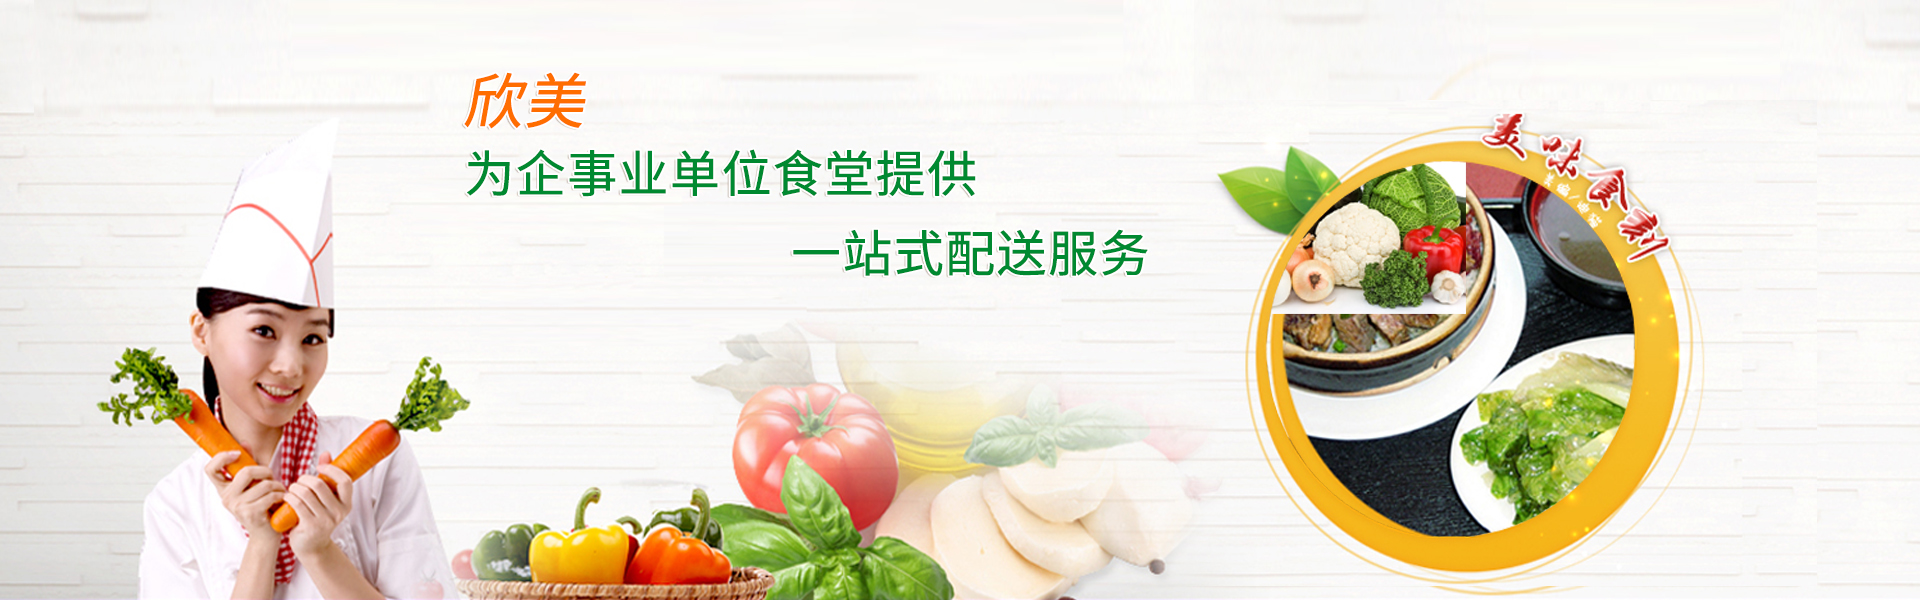 深圳蔬菜配送——把新鲜健康的蔬菜送到千家万户